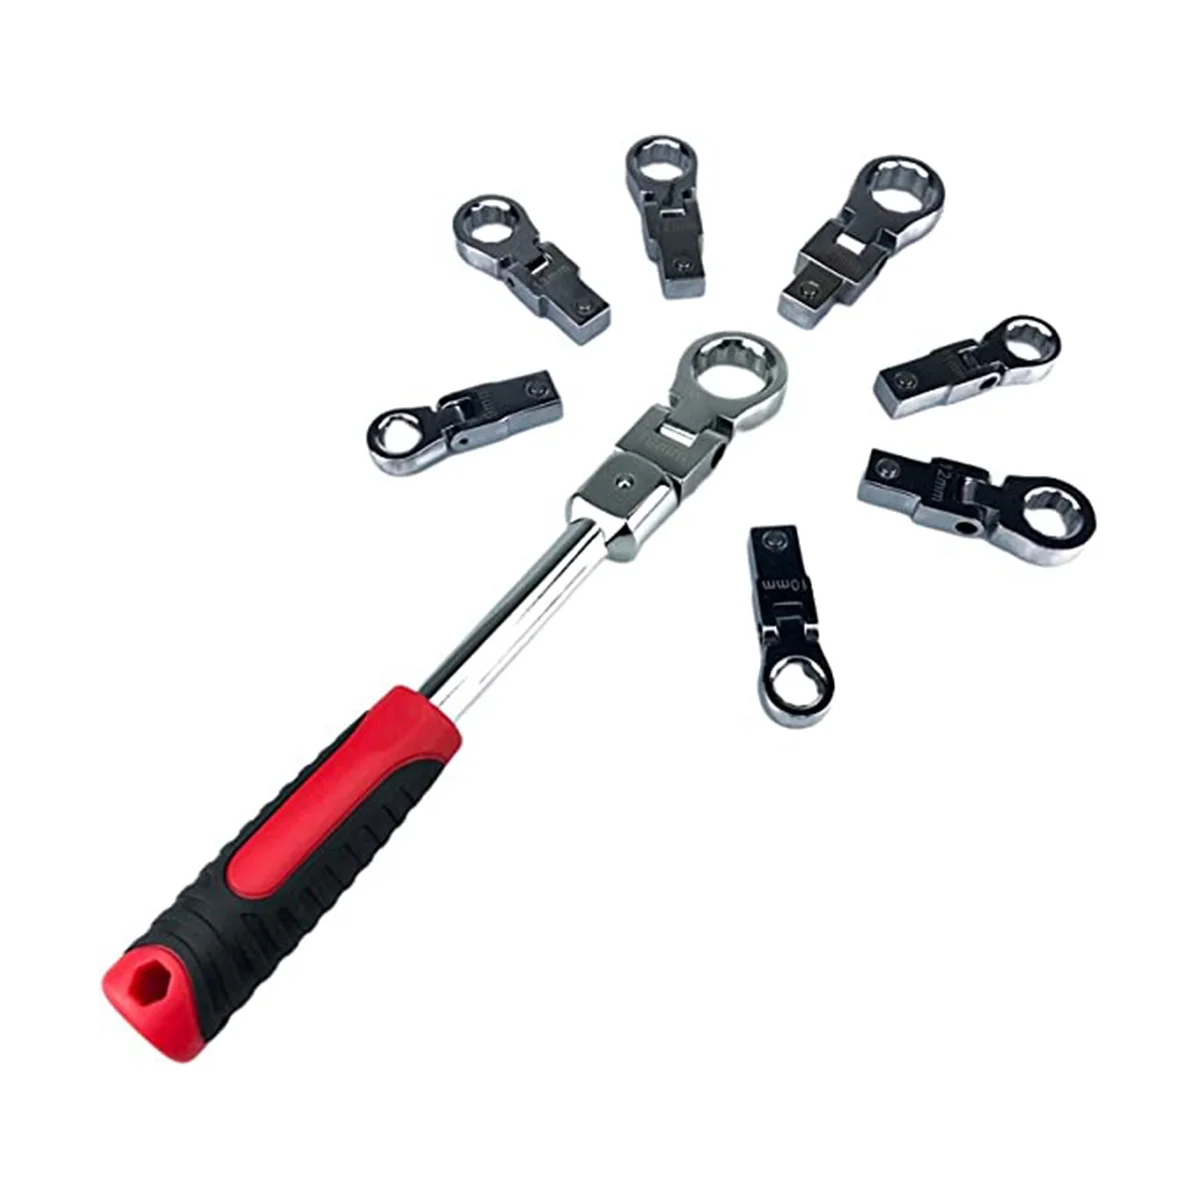 

Набор гаечных ключей 9-19 мм, 8 предметов, ручной инструмент, многофункциональный Шестеренчатый ключ, комбинированный ключ с храповым механизмом